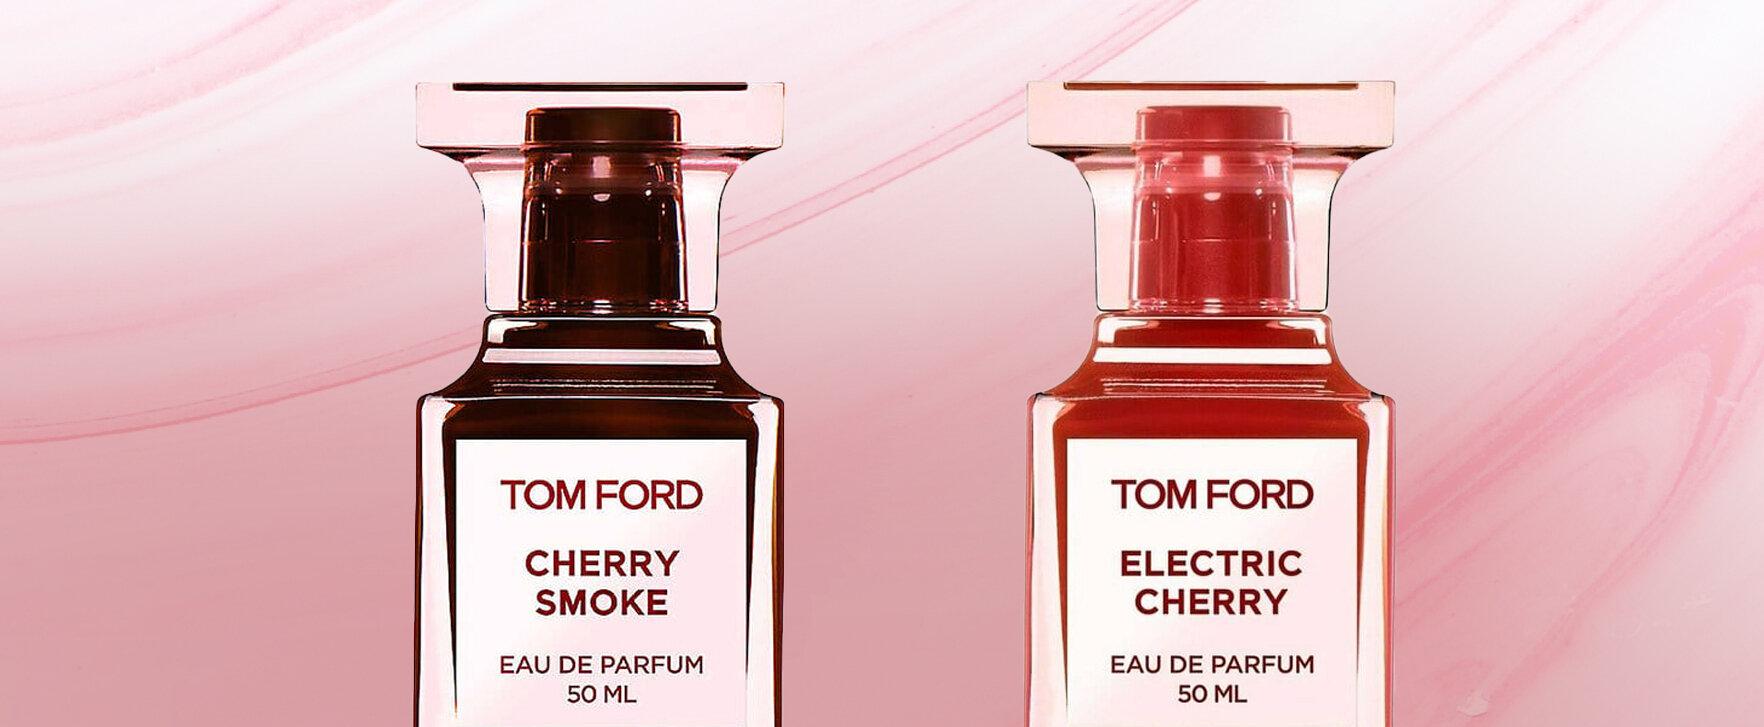 „Electric Cherry“ und „Cherry Smoke" — Tom Ford lanciert neue fruchtige Unisexdüfte